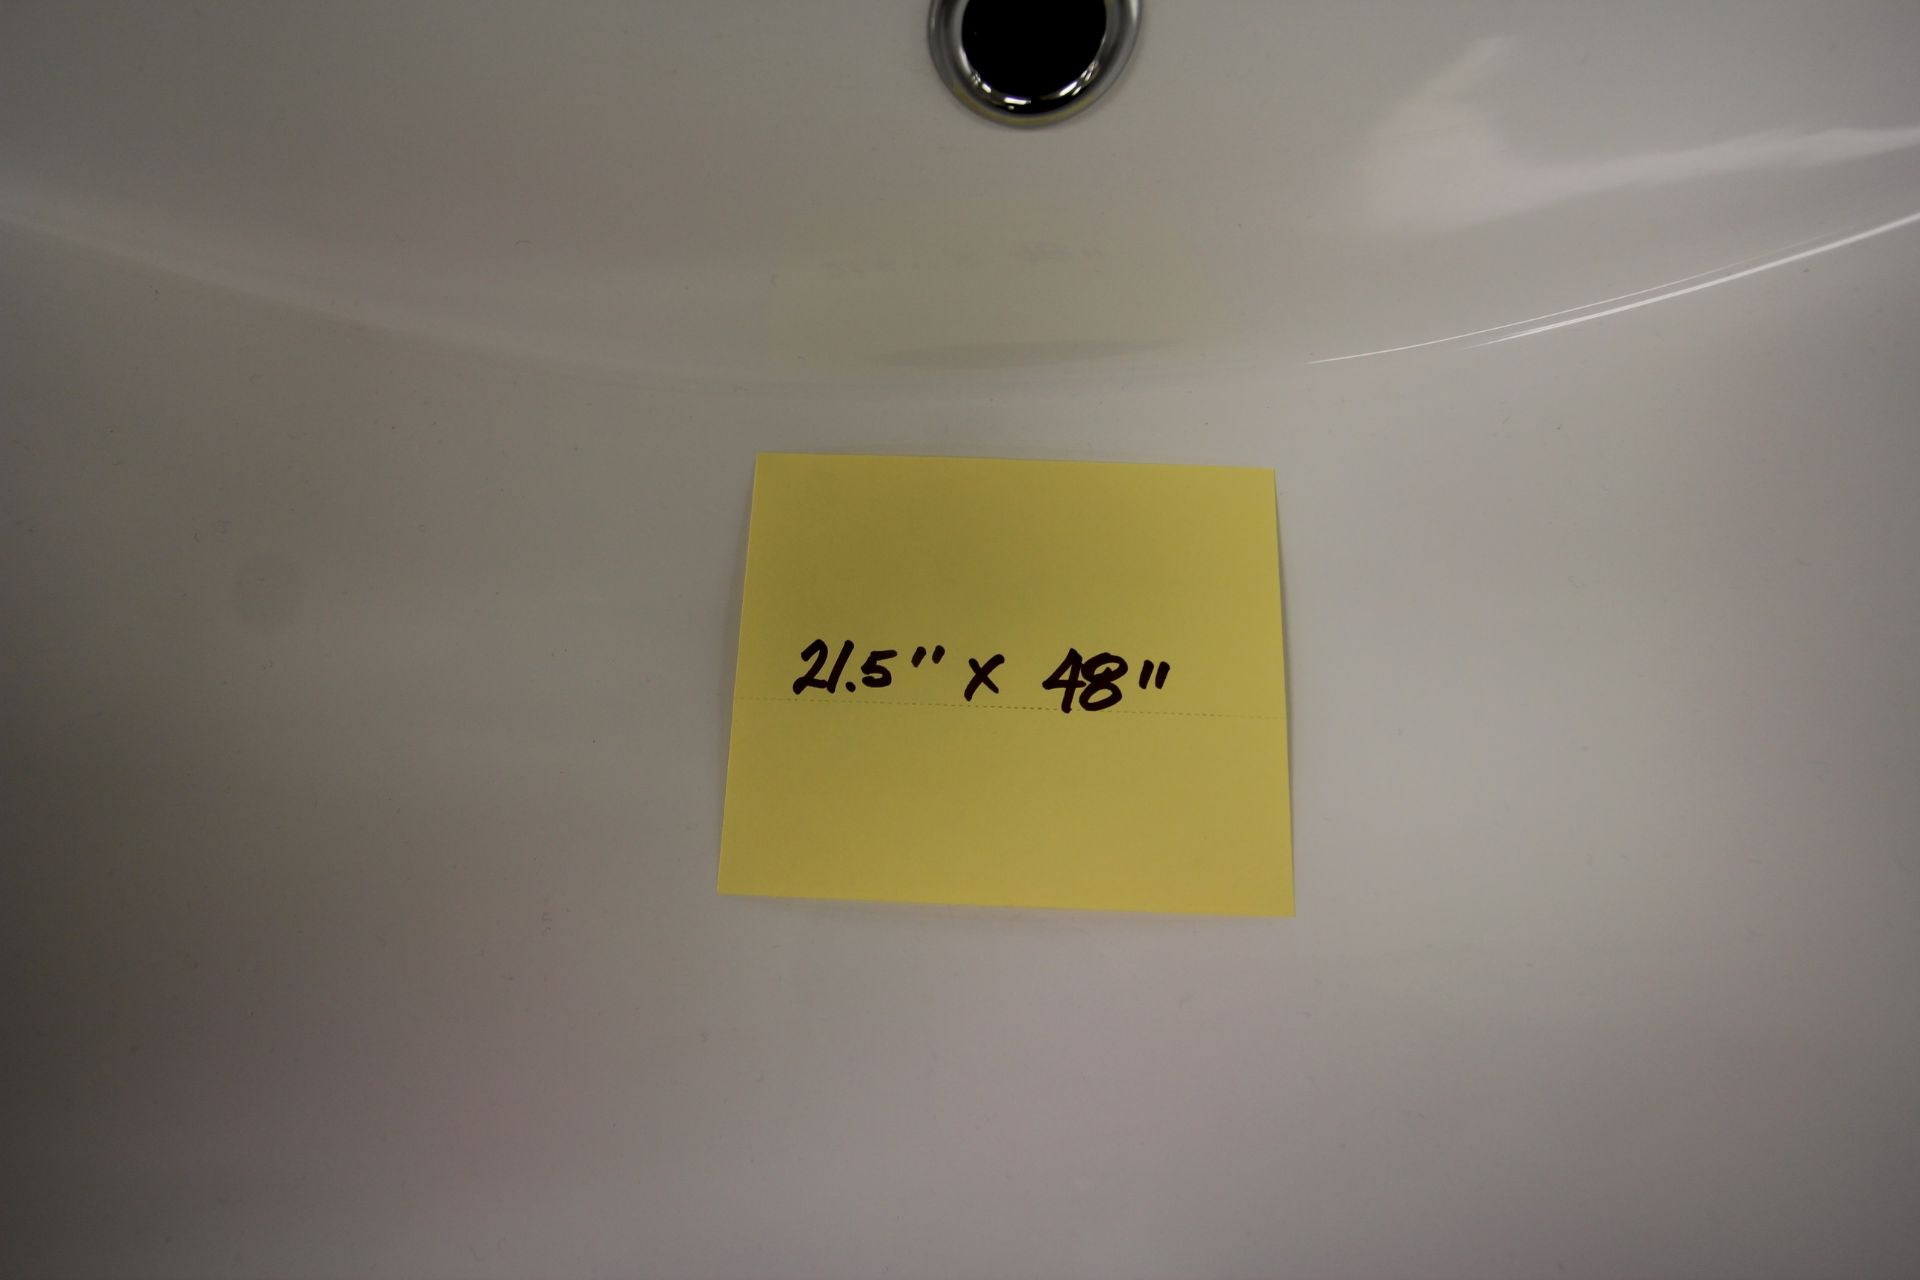 SHOWROOM DISPLAY BATHROOM VANITY W/ SINK, FAUCET, CUPBOARDS, 21.5" X 48" - Image 3 of 3